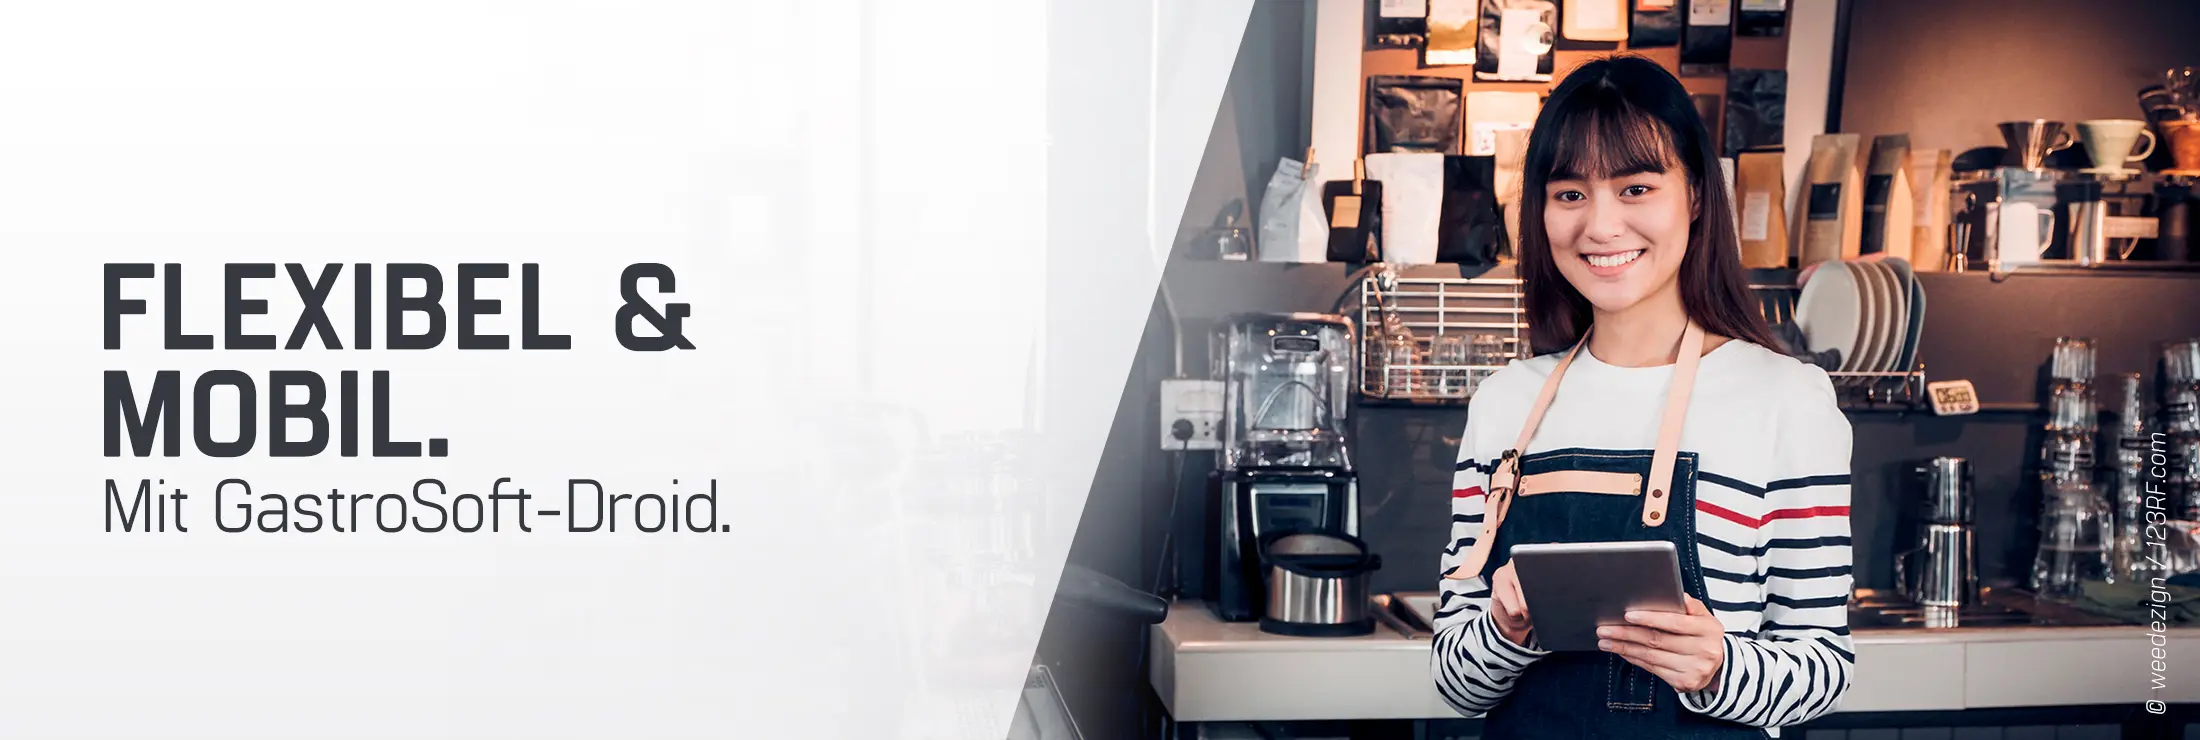 braunhaarige Frau im weiß-gestreiften pullover in einem Cafe als Kellnerin oder Barista stehend für Droid mobile Bestelllösung